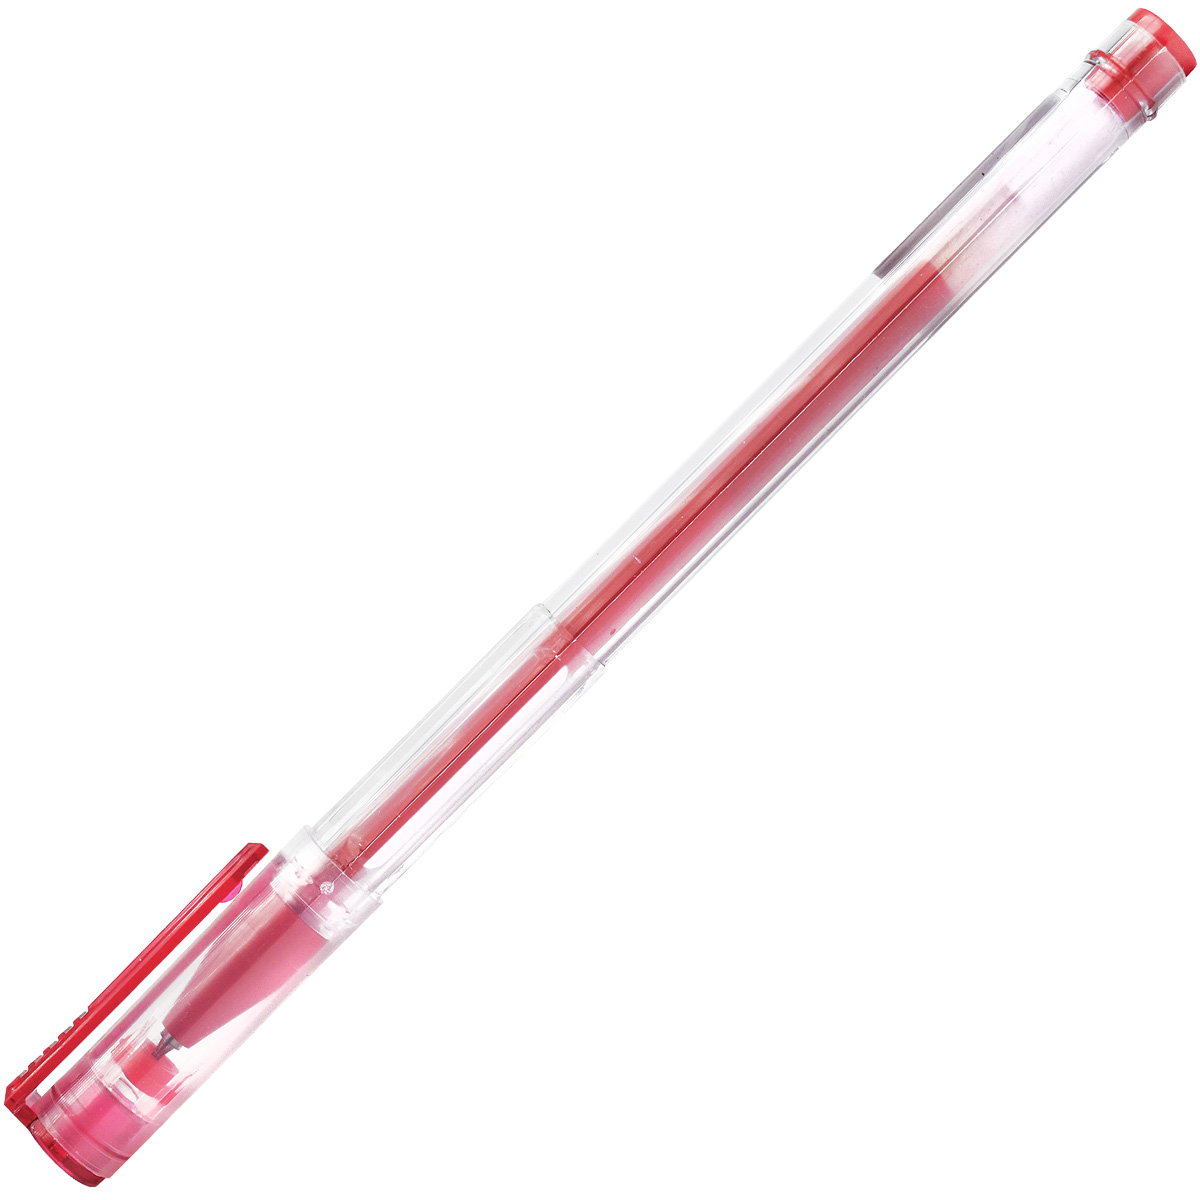 Окпд ручка гелевая. Ручки Index красная lbp800 Rd. Ручка 877688 Red гелевая. Ручка гелевая красный Luxor 18403 /12 Box (Red). Ручка гелевая красная agp302/e/BK.